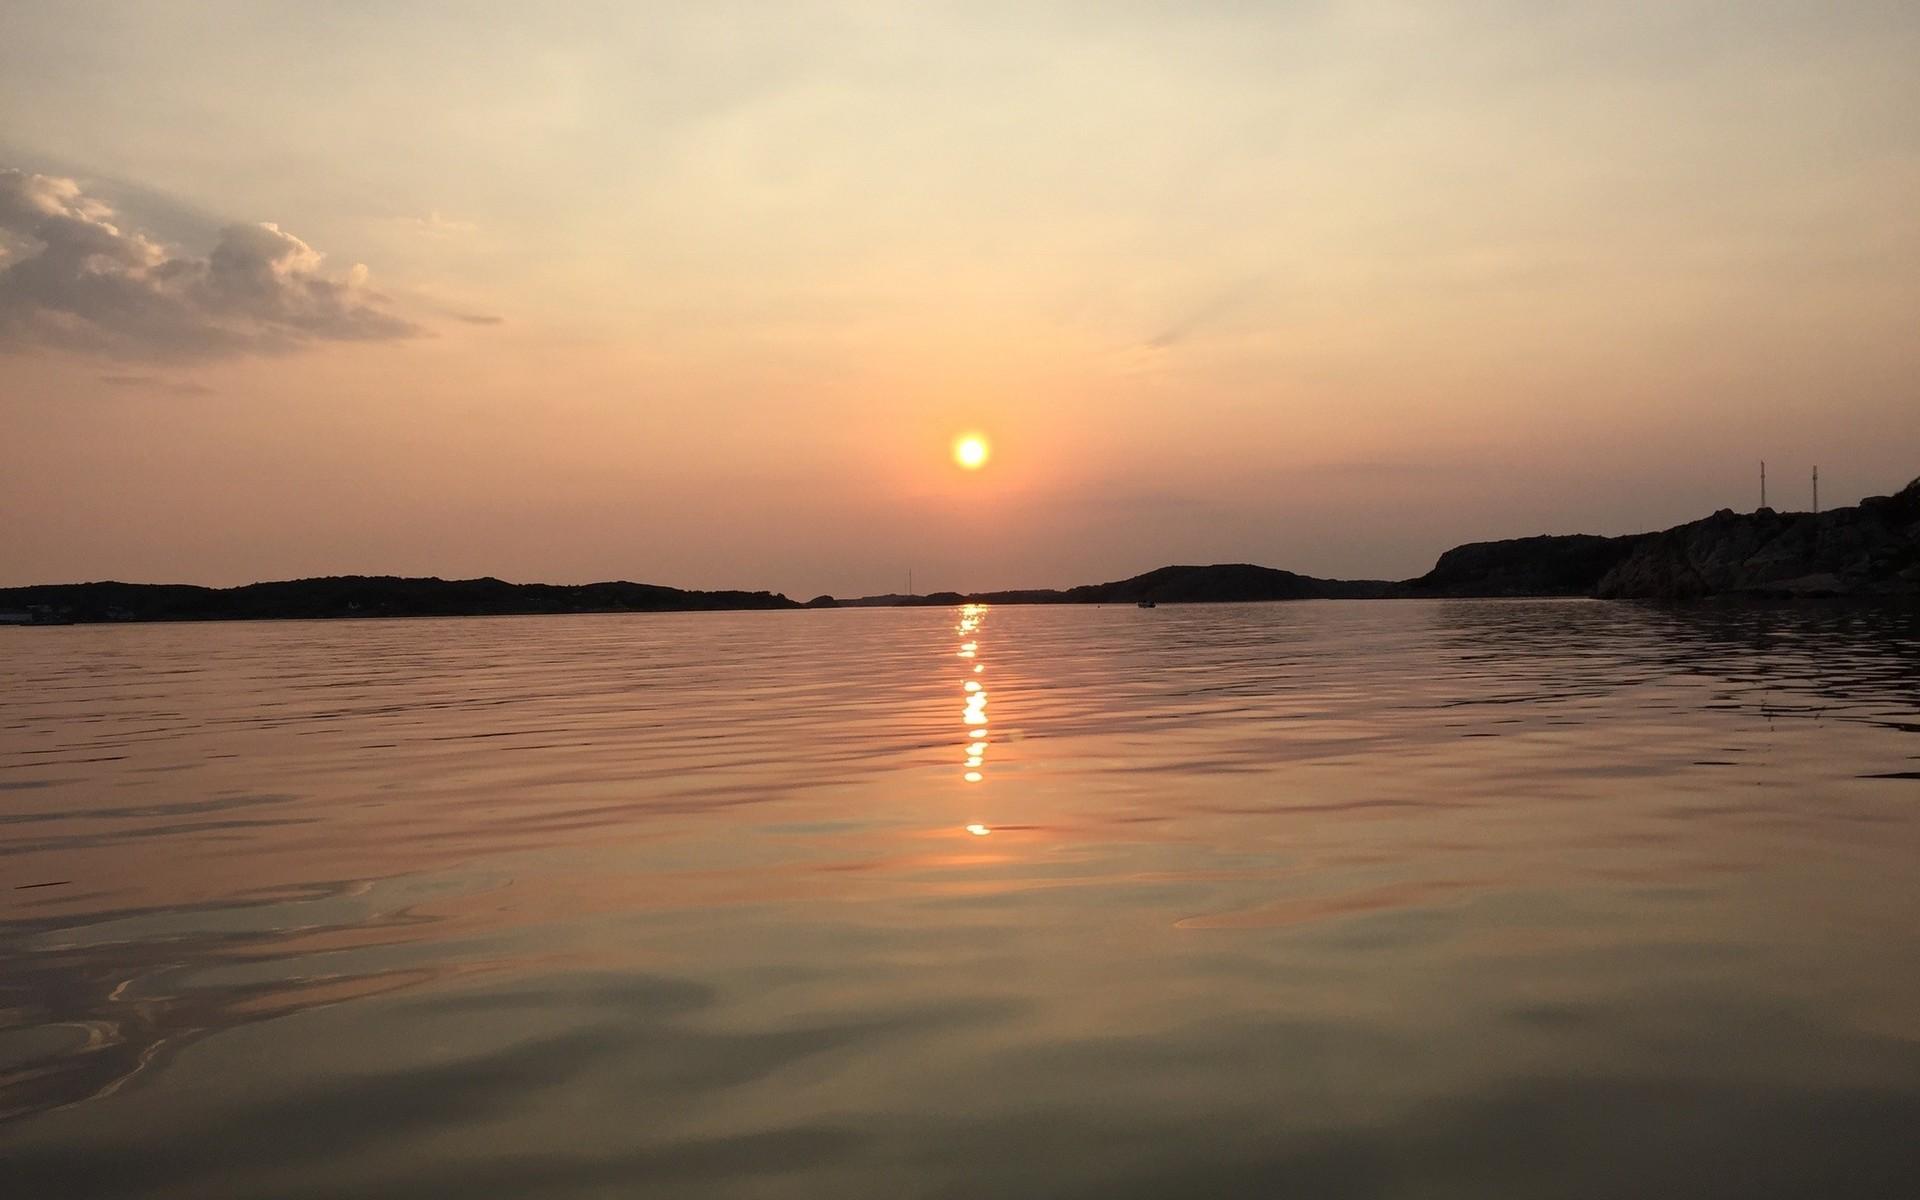 Denna bild är tagen alldeles vid färjan vid Bohusmalmön med motiv solnedgång över Kungshamn Smögen efter en fisketur. En underbar kväll. 